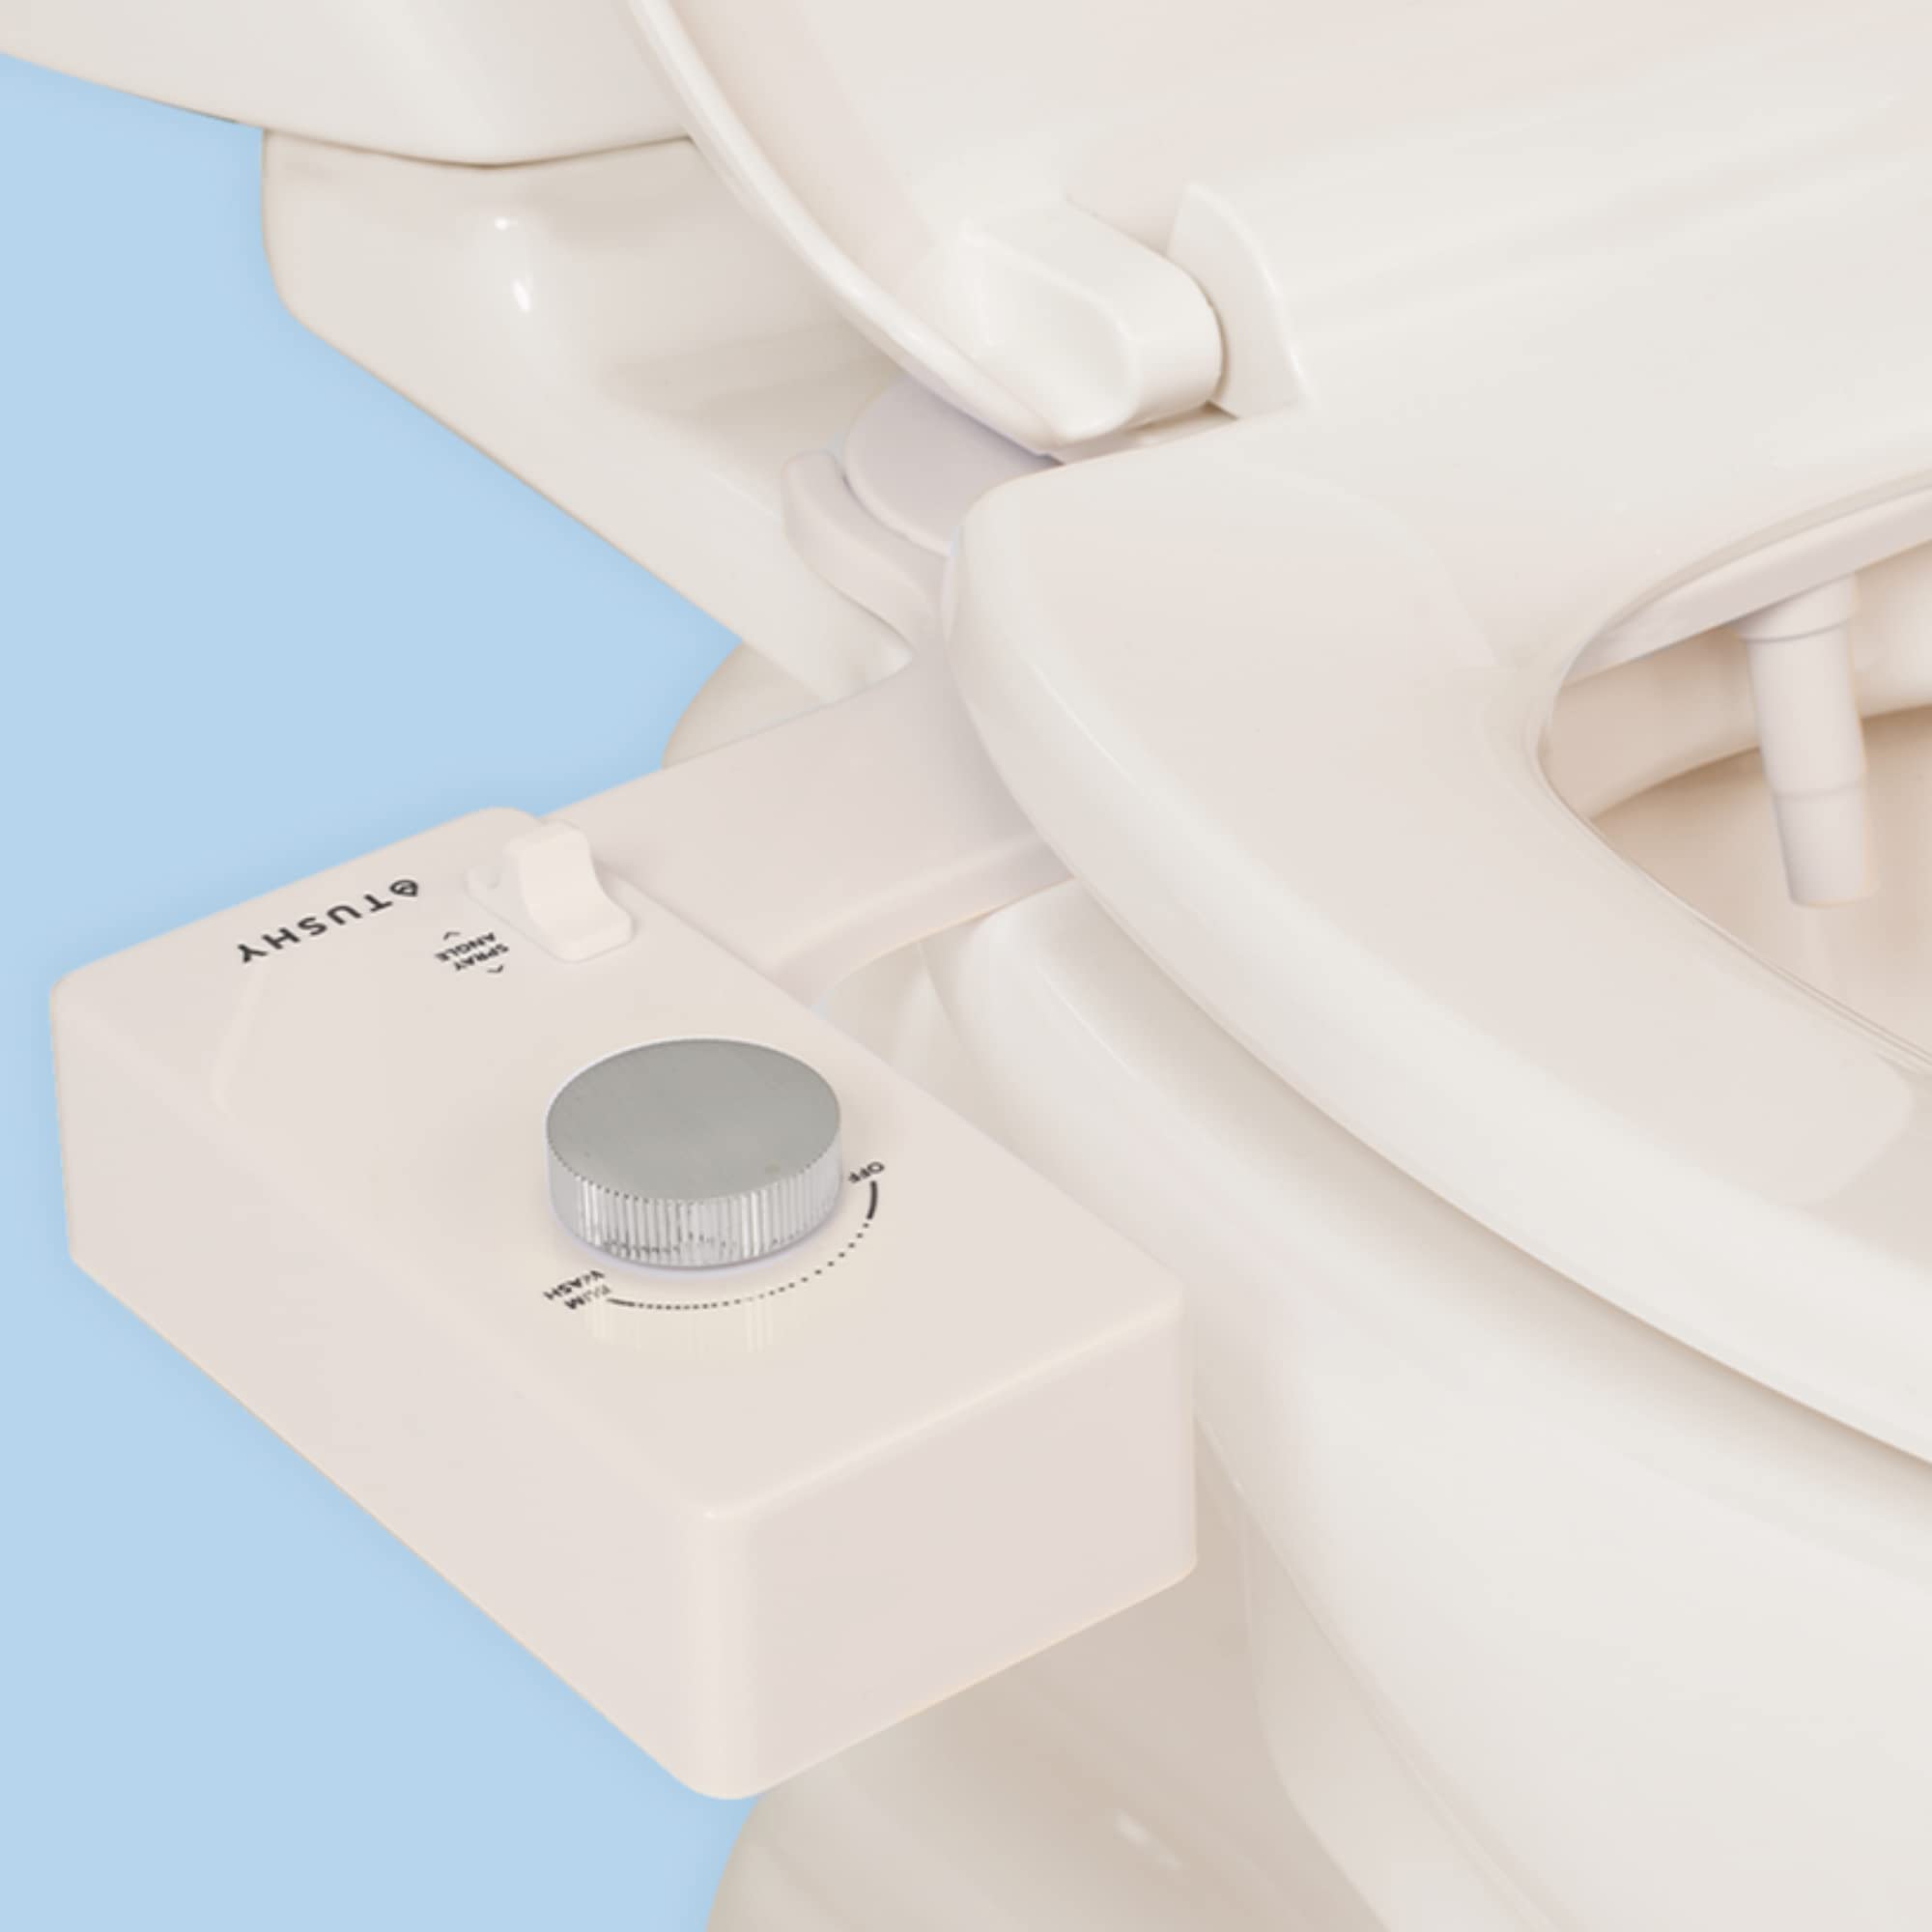 TUSHY 经典 3.0 坐浴盆马桶座圈附件 - 自洁喷水器 + 可调节压力喷嘴，角度控制，易于安装